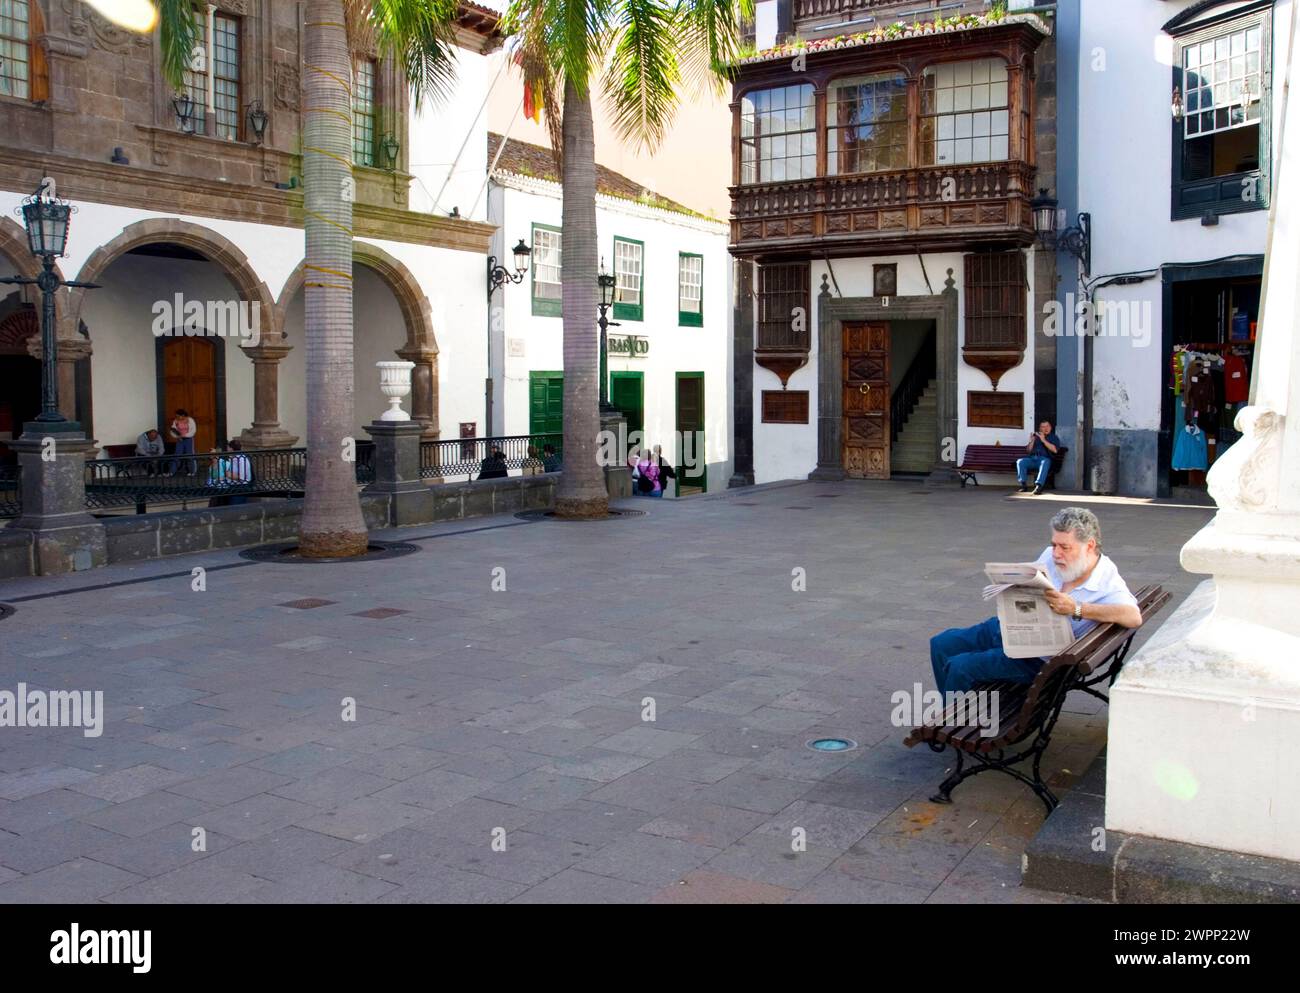 Uomo che legge il giornale, Plaza de Espana, Santa Cruz de la Palma, la Palma, Kanarische Inseln, Spanien Foto Stock